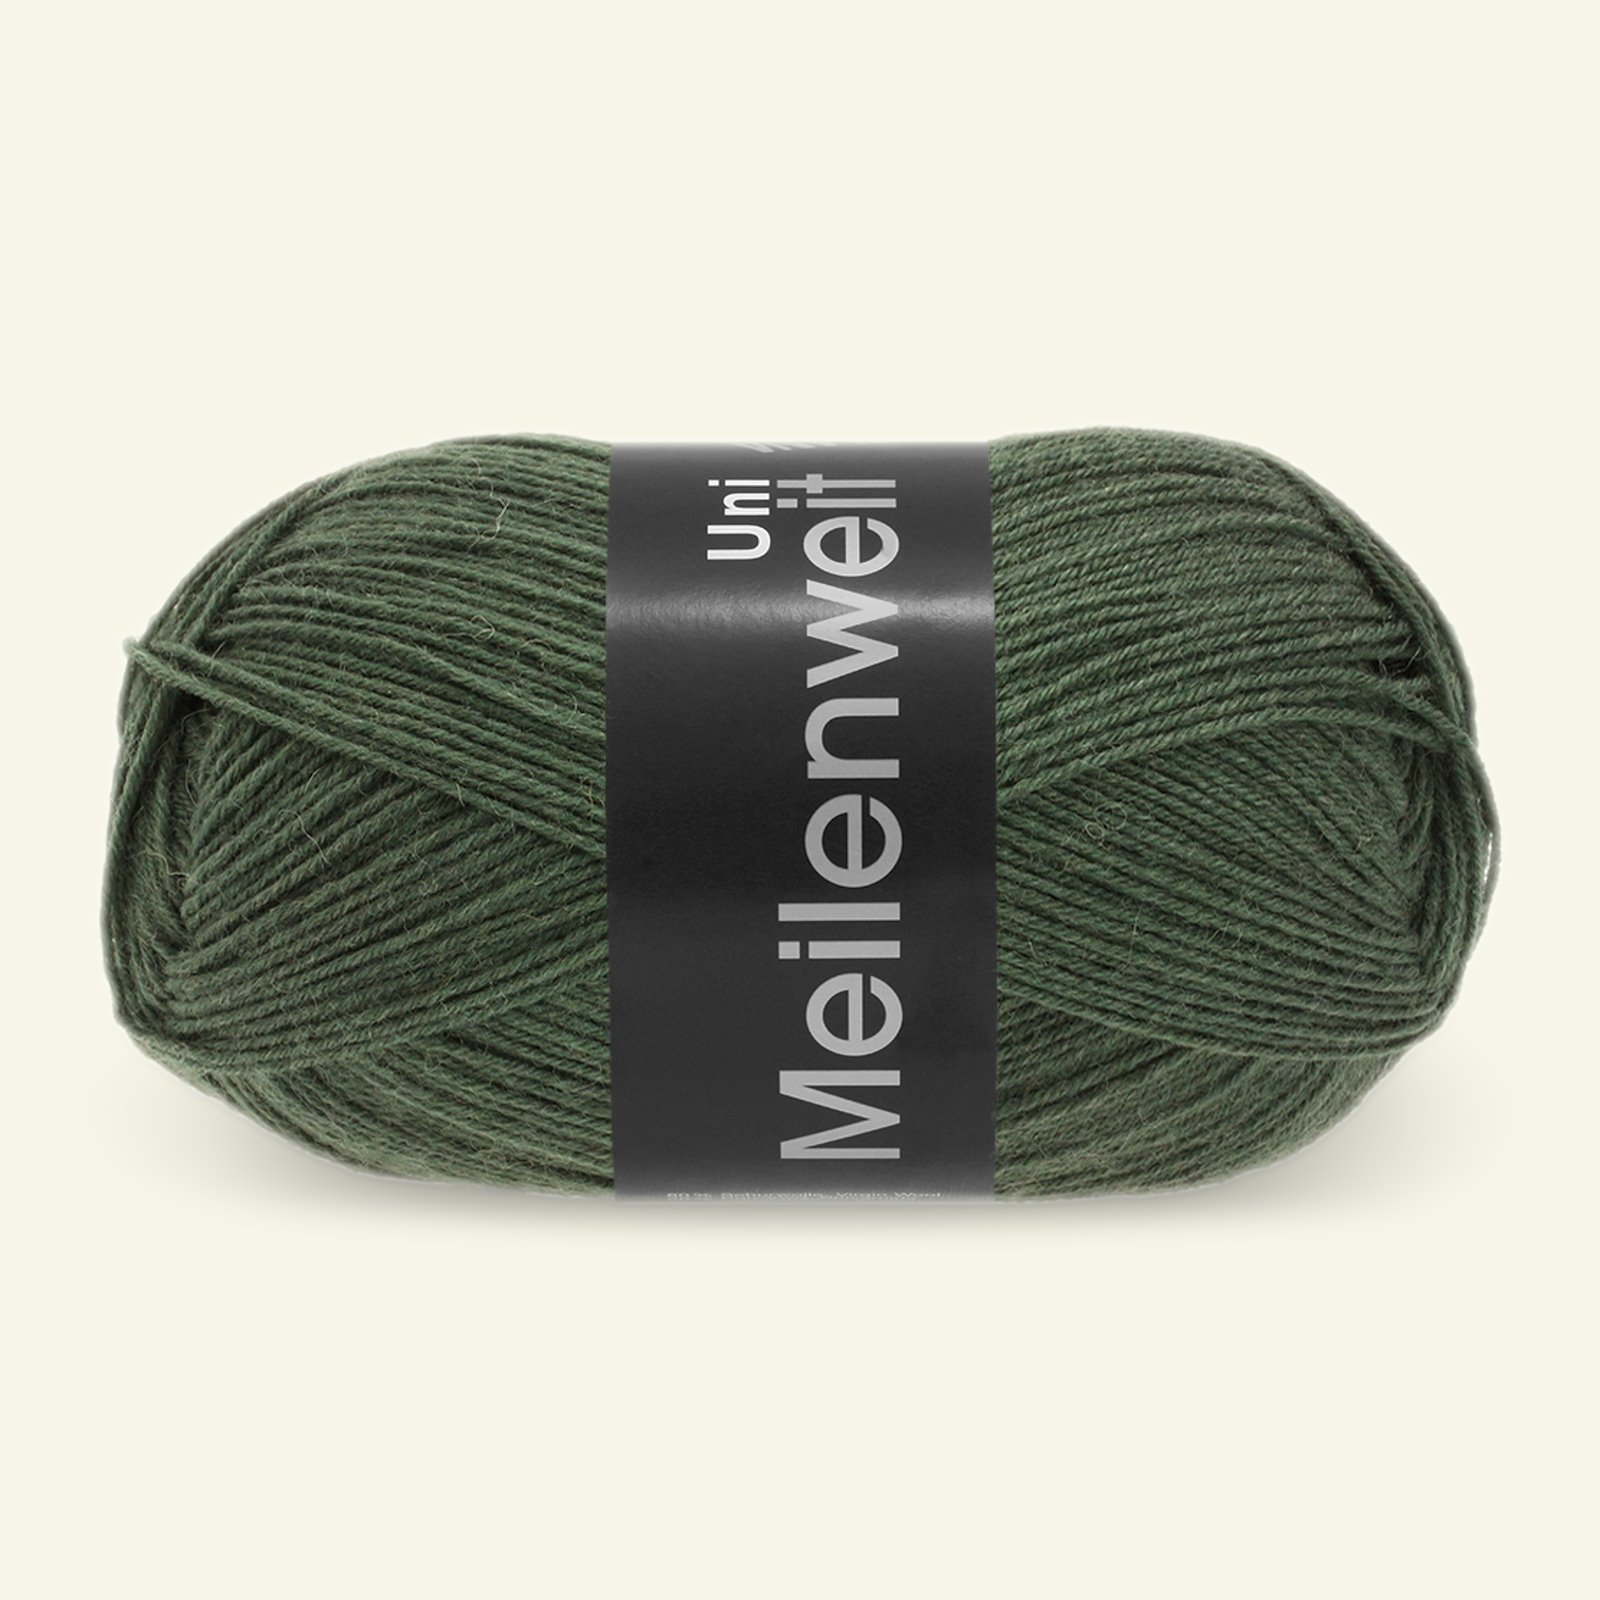 Lana Grossa, sock yarn with wool "Meilenweit 100 Uni", bottle green 90001002_pack